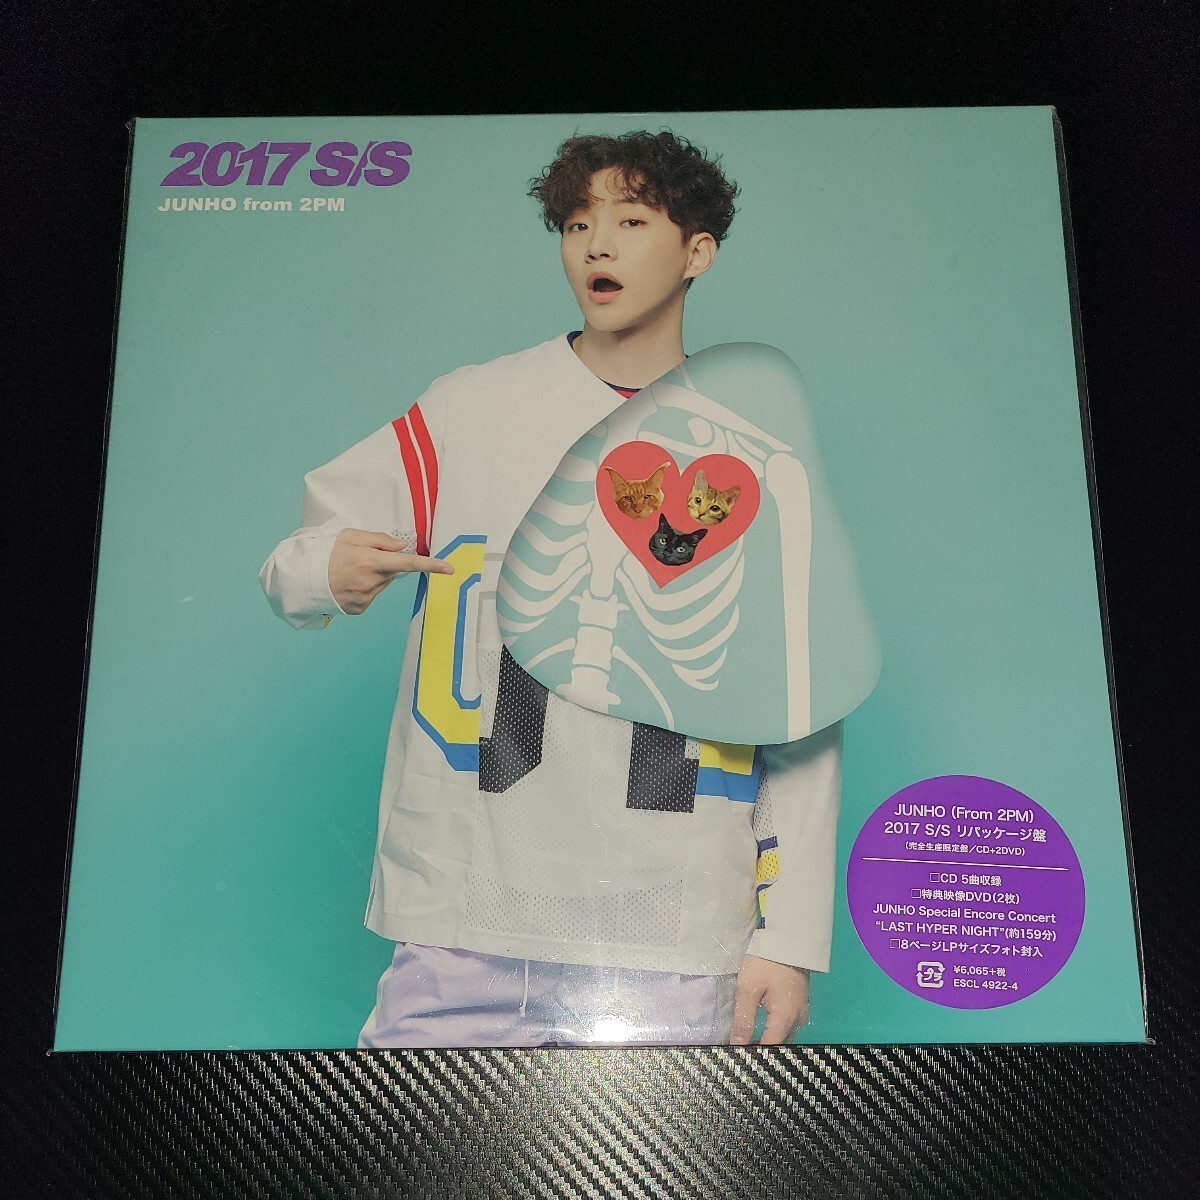 【美品】韓流 2PM JUNHO ジュノ S/S 2017 完全生産限定盤 LPサイズ盤 CD DVD リパッケージ LP SS LIVE 映像 ESCL4922-4の画像1